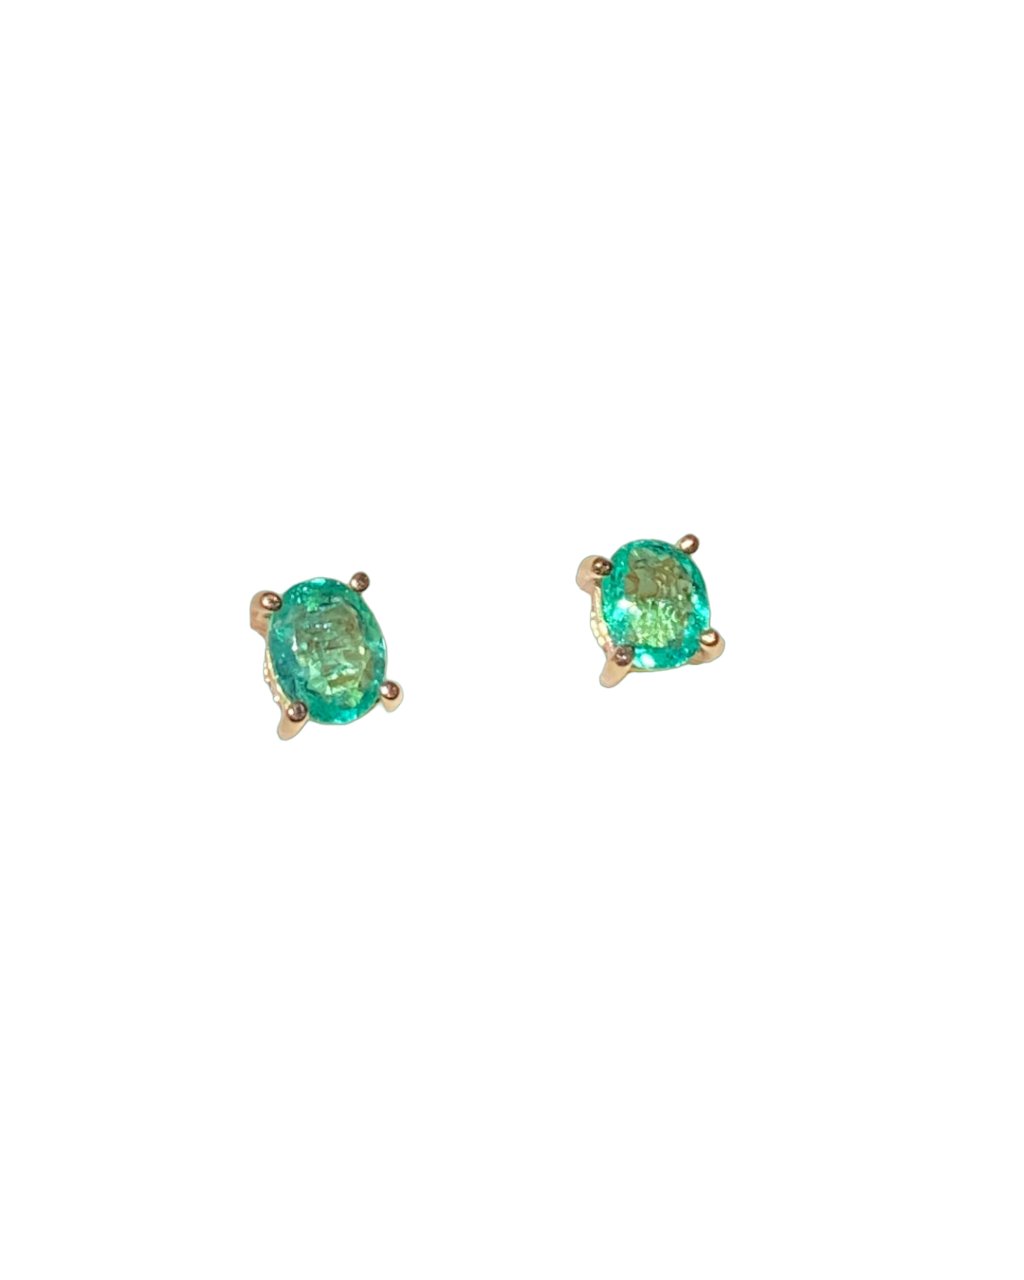 Topos de Esmeraldas Ovaladas en Oro Amarillo 18k - LQ Jewelry Design